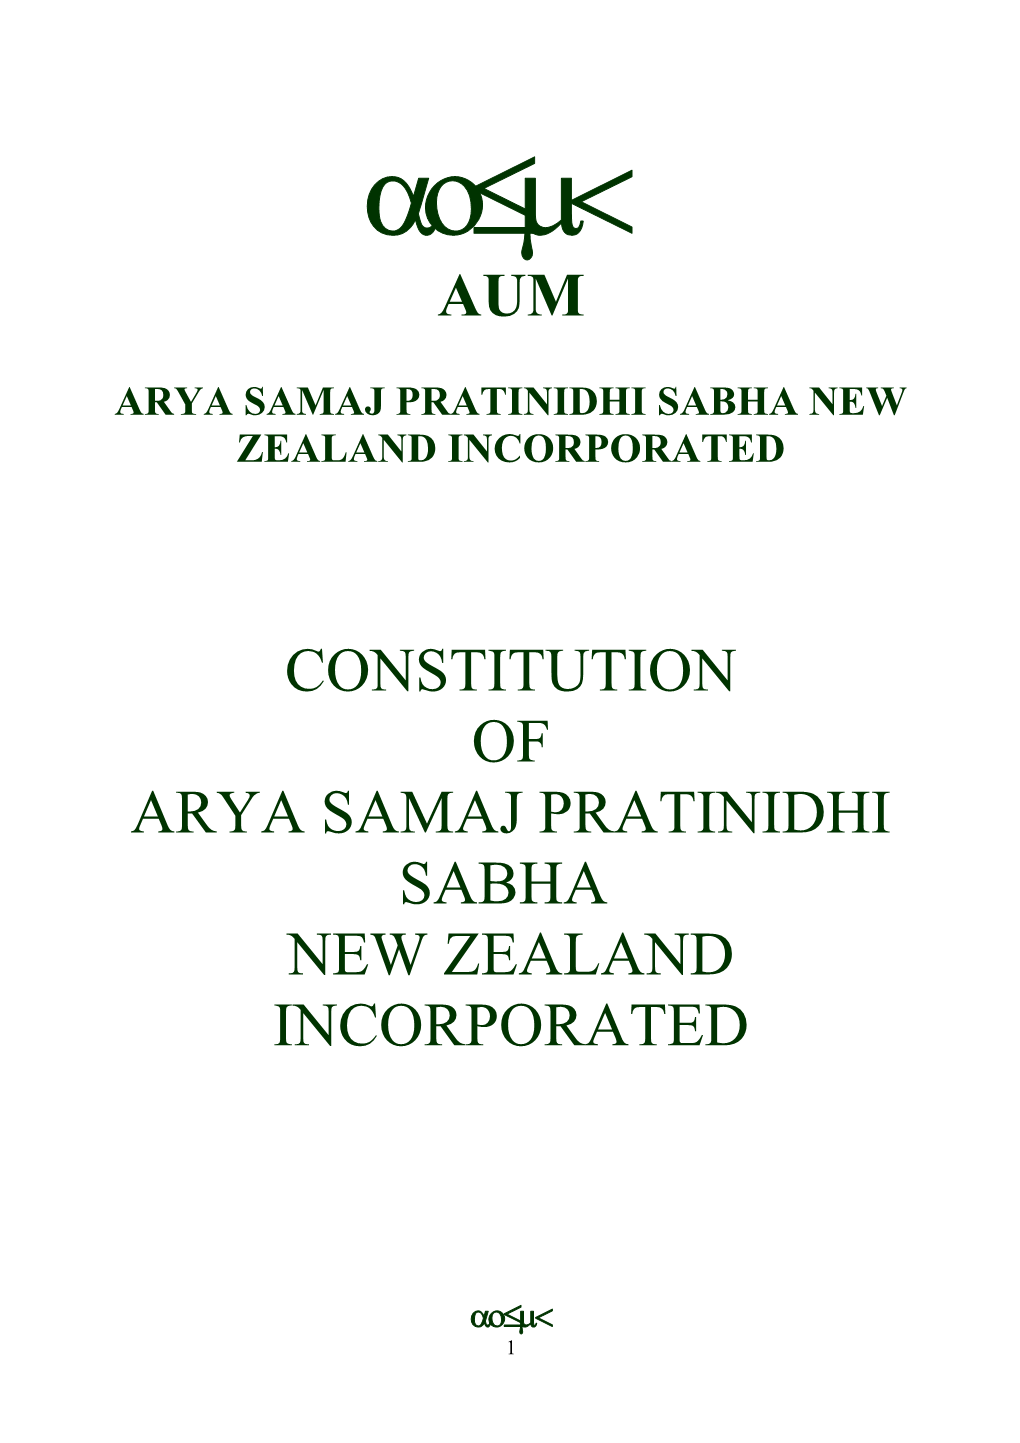 Arya Samaj Pratinidhi Sabha New Zealand Incorporated